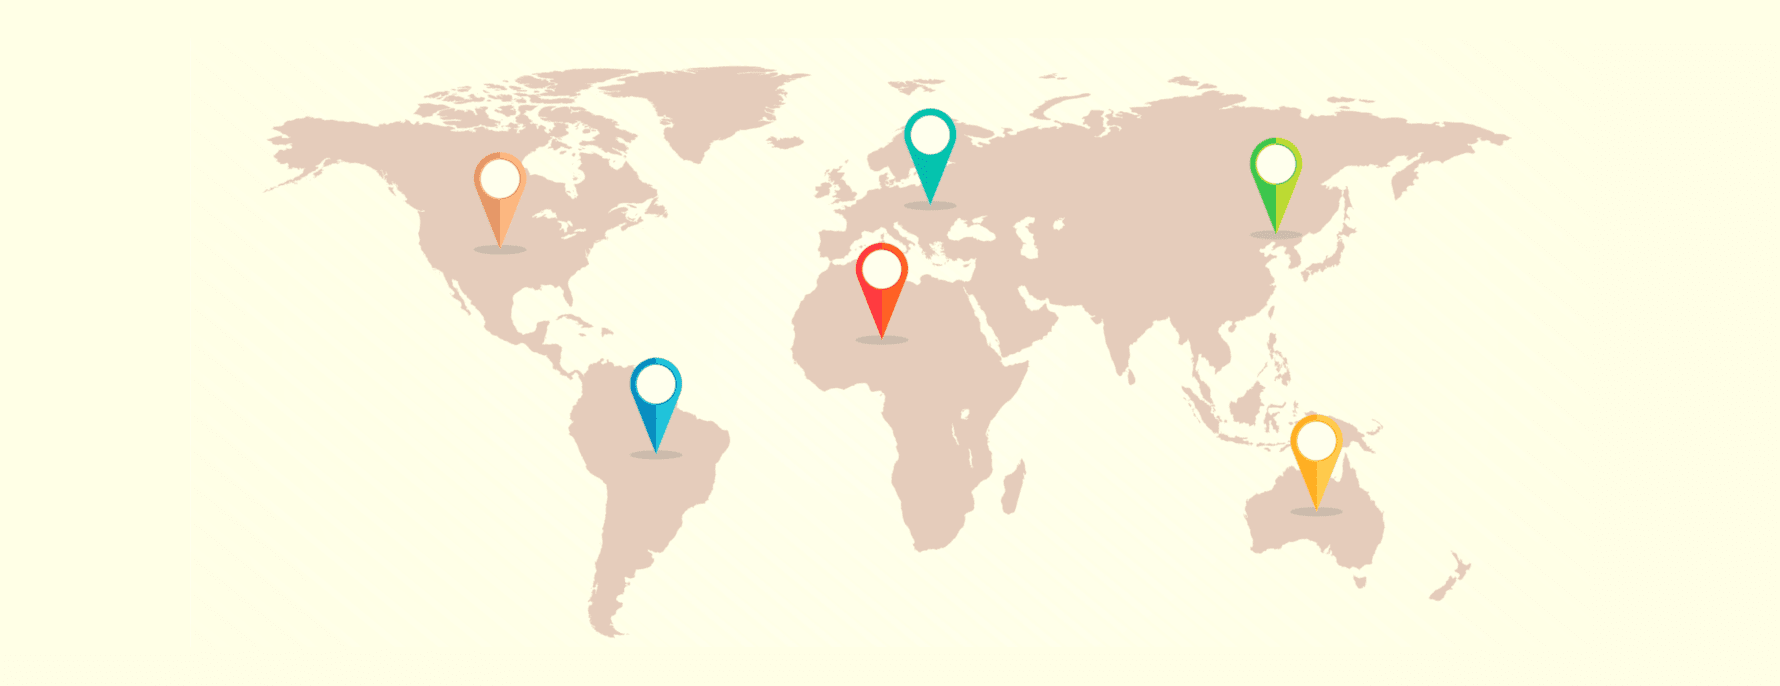 Zemljovid svijeta s različitim VPN jurisdikcijama